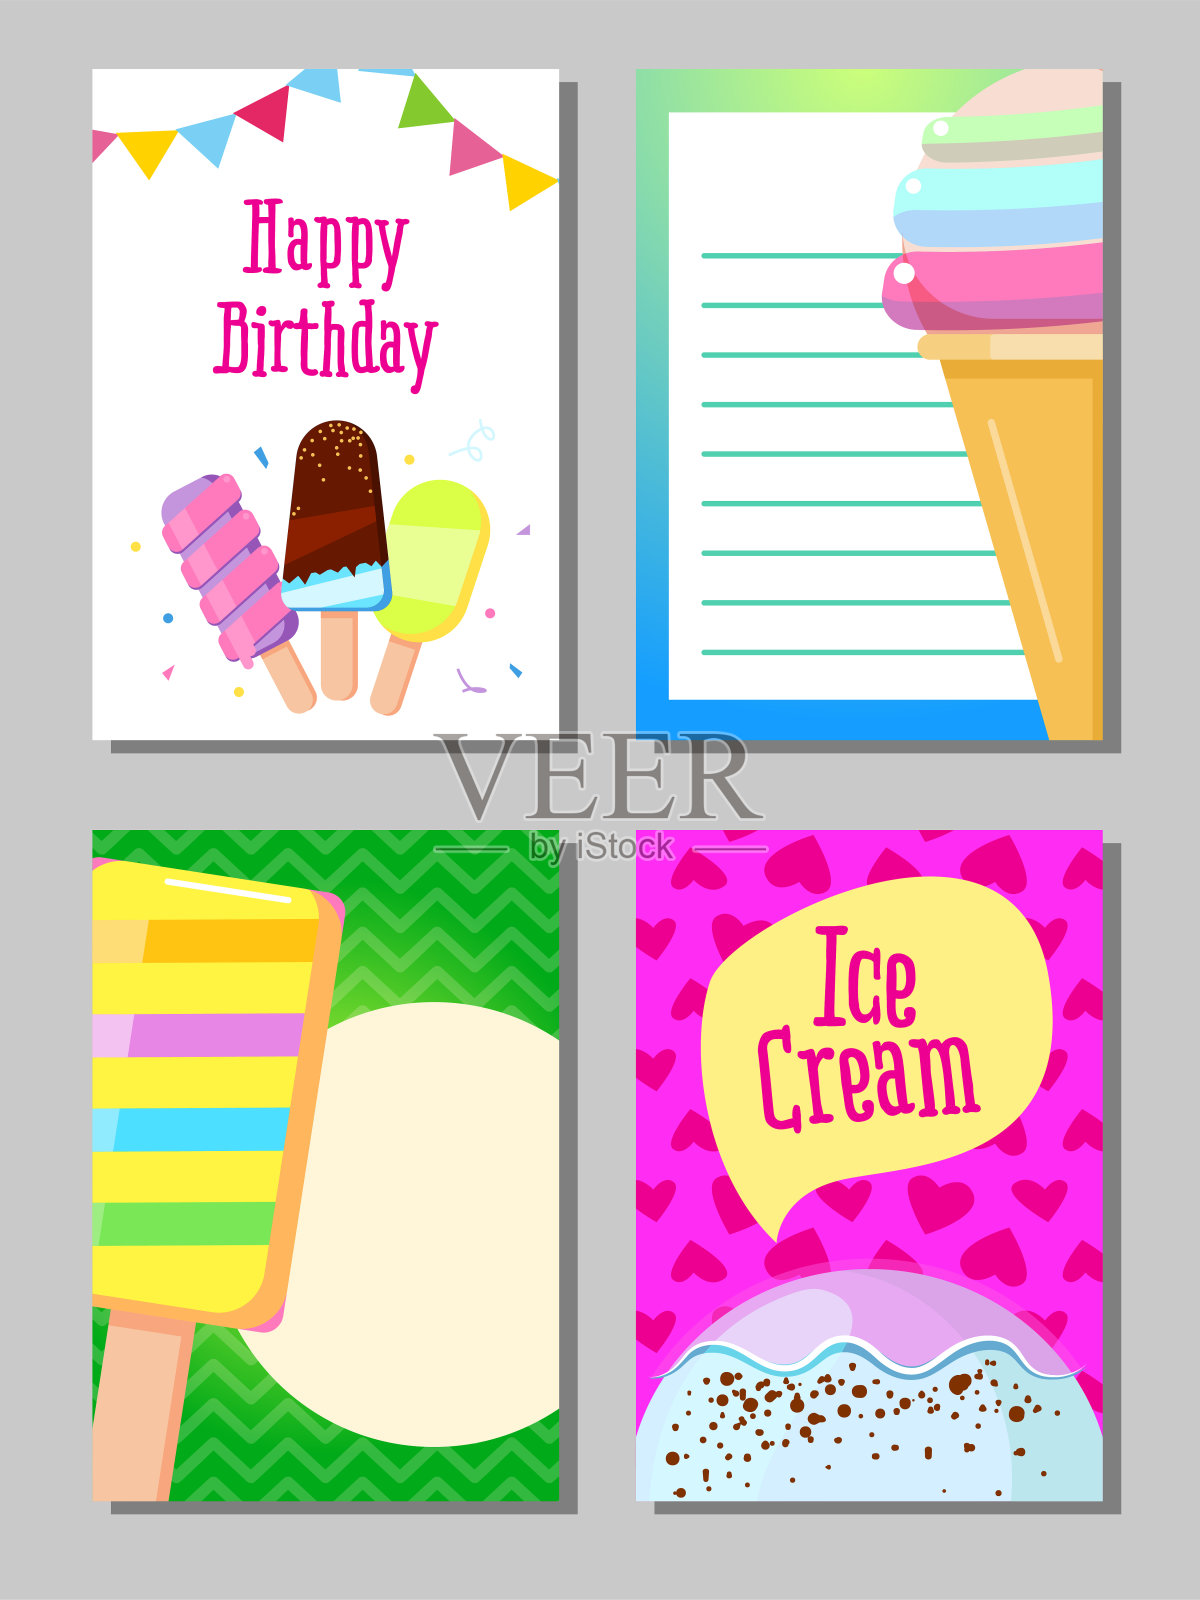 可爱甜蜜的旗帜冰淇淋卡片向量设计模板素材